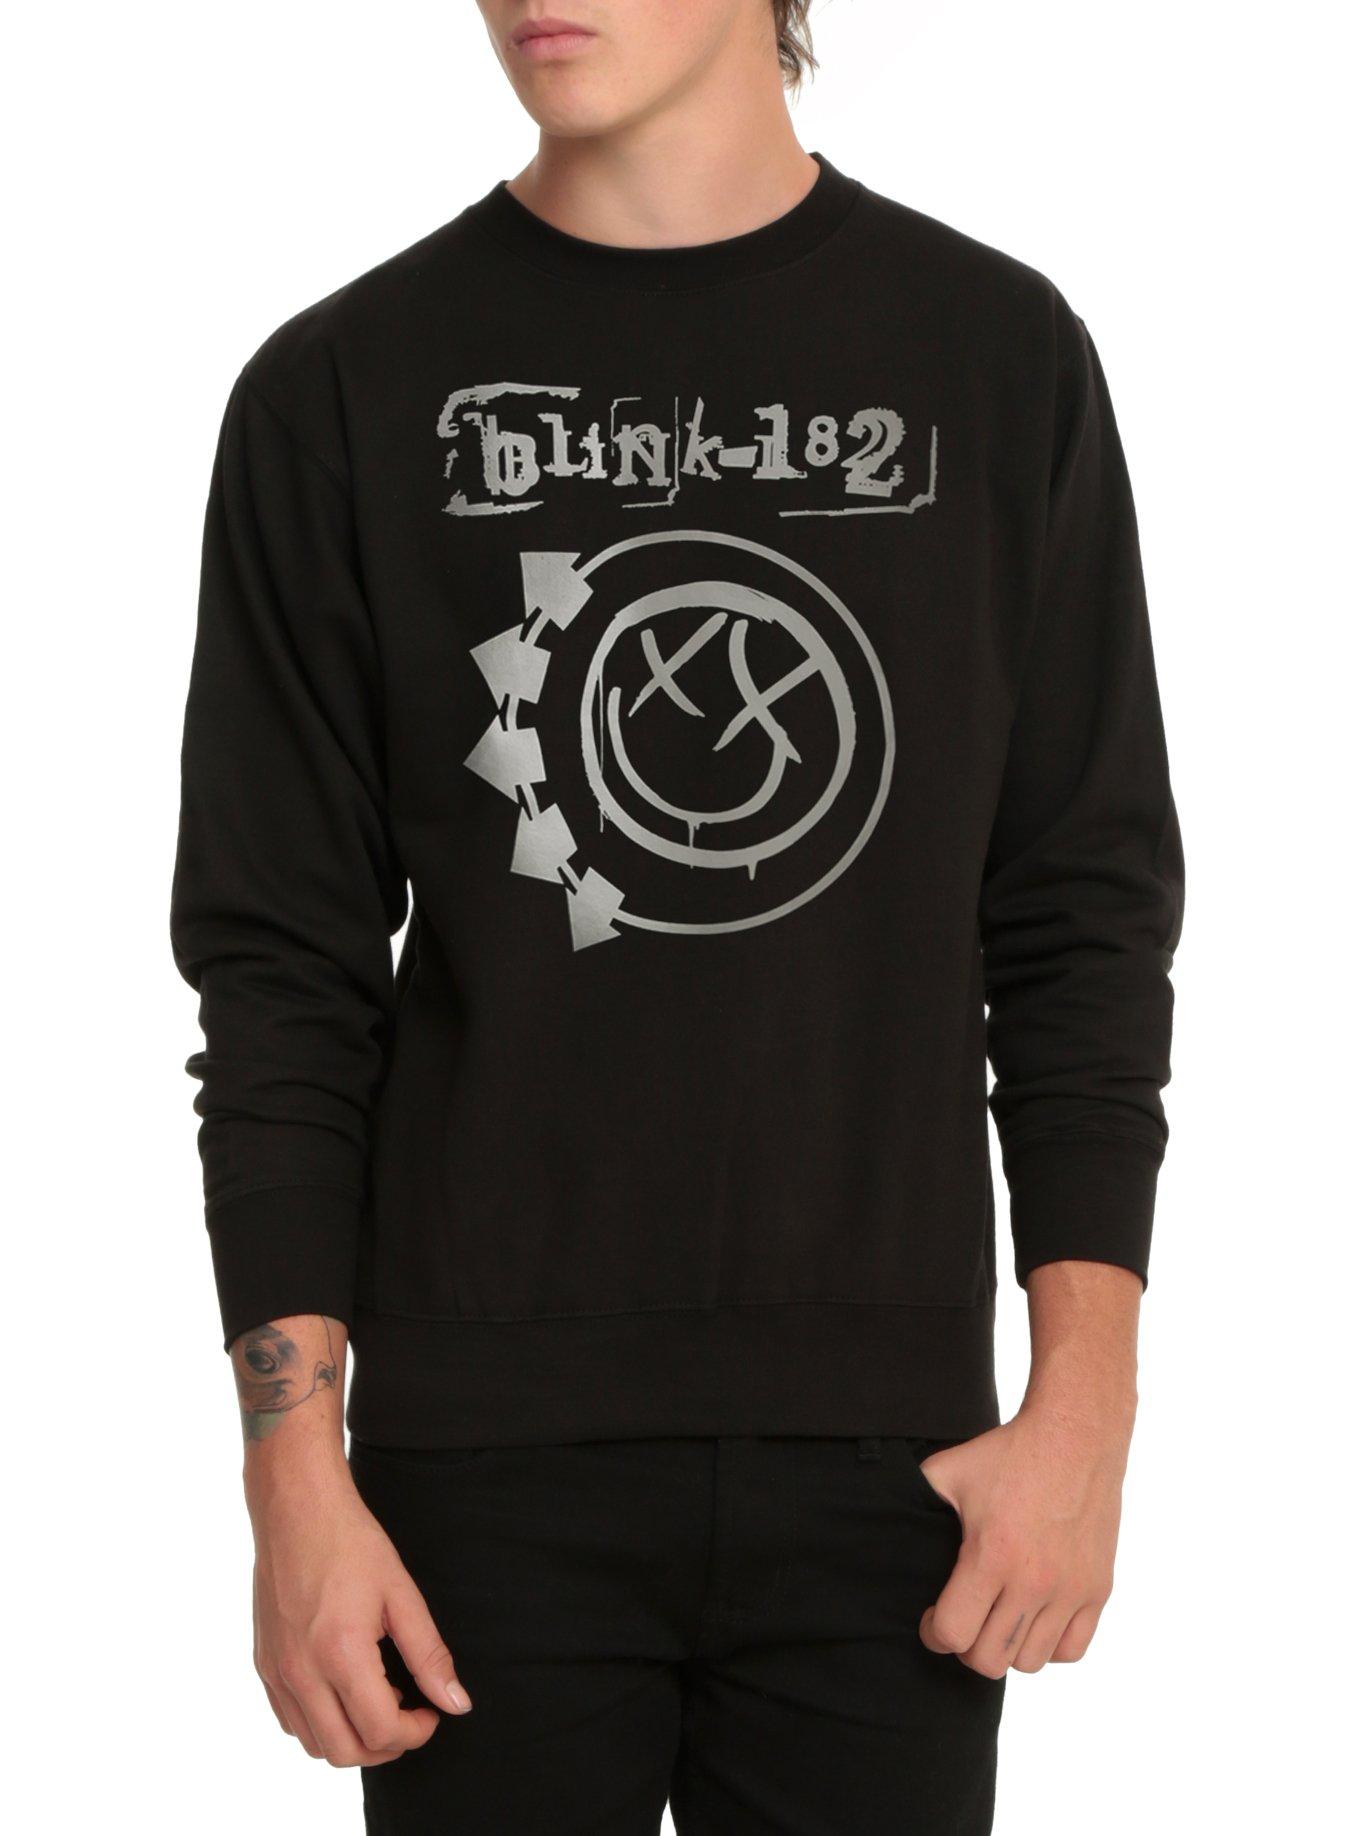 Blink-182 Smiley Logo Crew Pullover, BLACK, hi-res